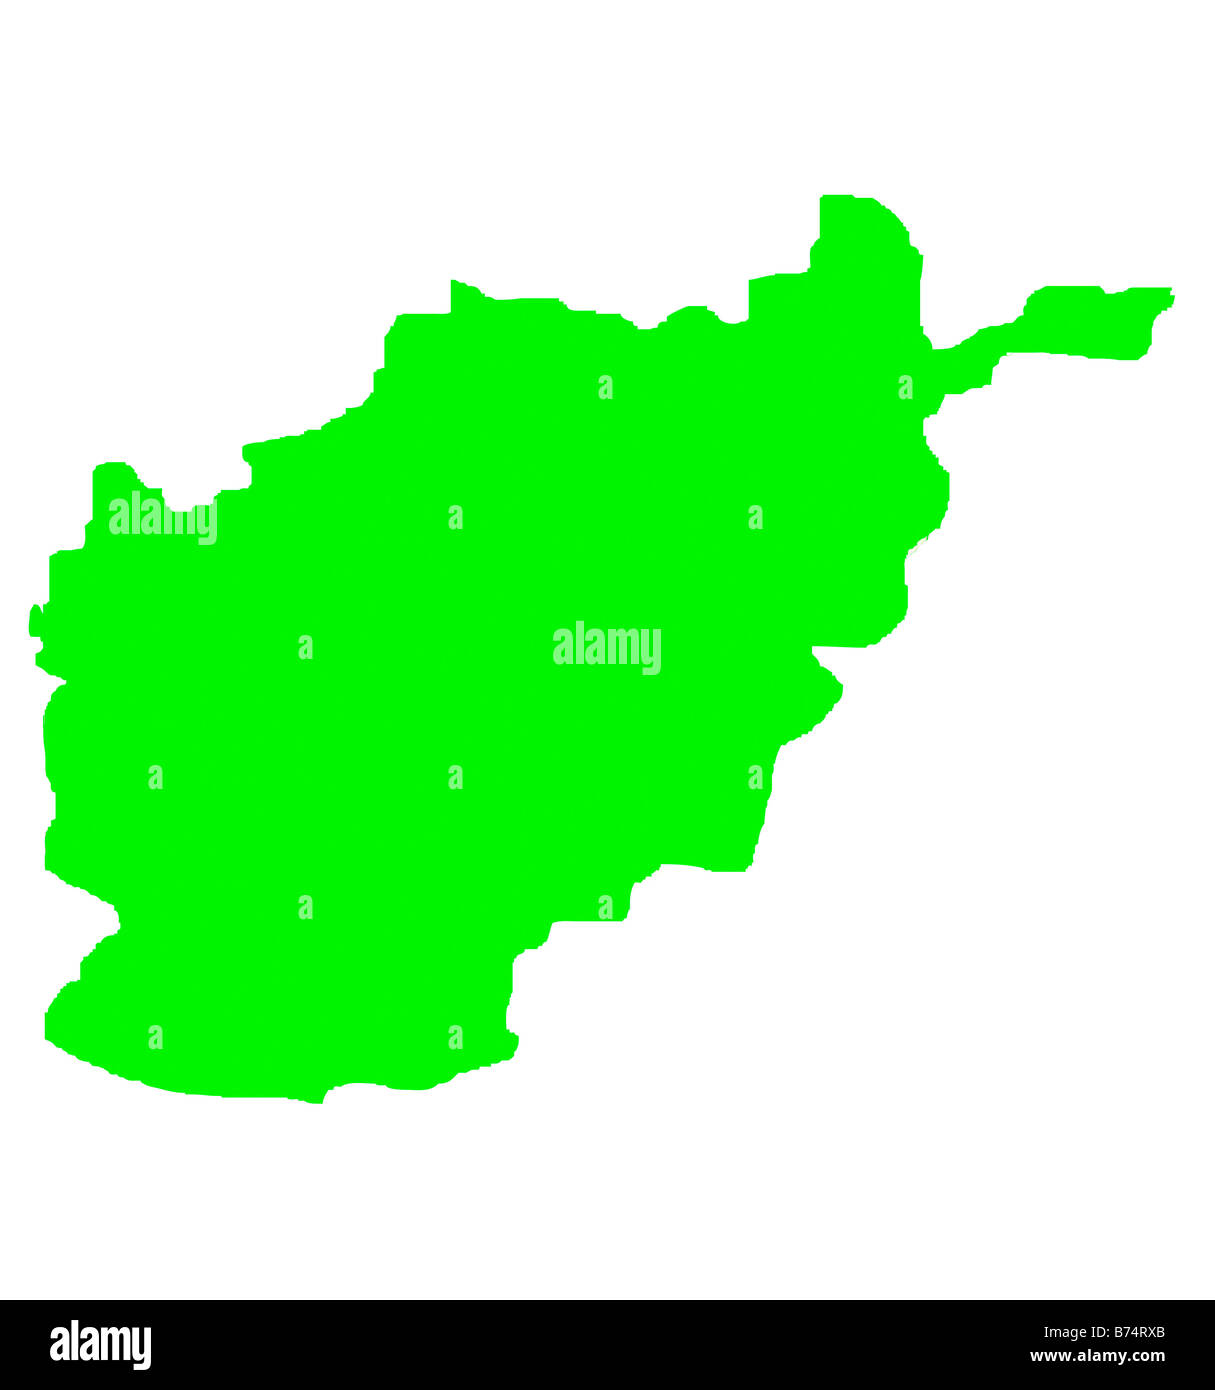 République islamique d'Afghanistam contour plan en vert isolé sur fond blanc Banque D'Images